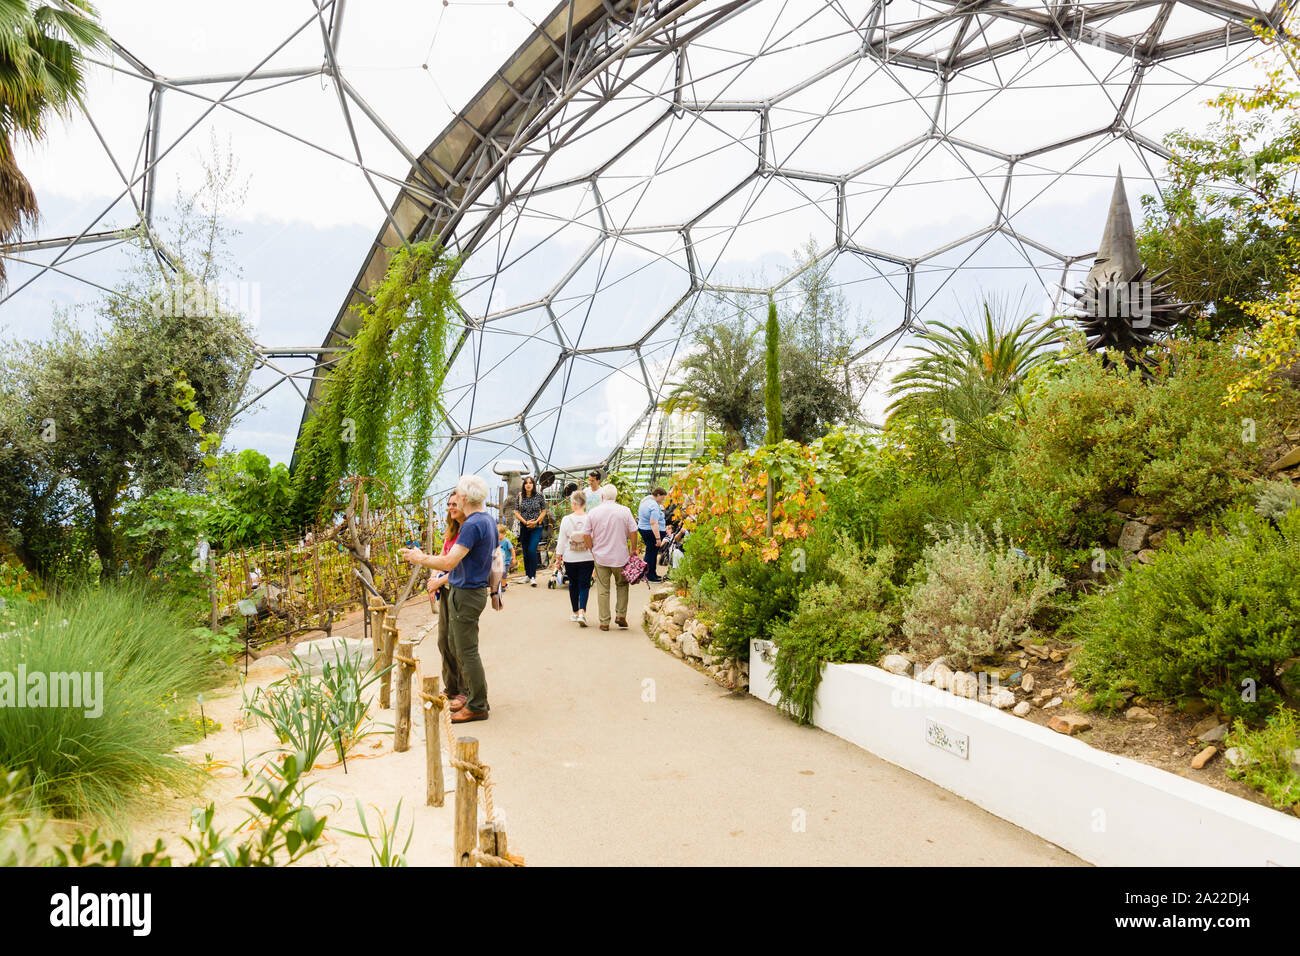 L'Eden Project biome méditerranéen une attraction touristique populaire construit dans une ancienne carrière avec des jardins tropicaux situé dans les dômes géants Banque D'Images